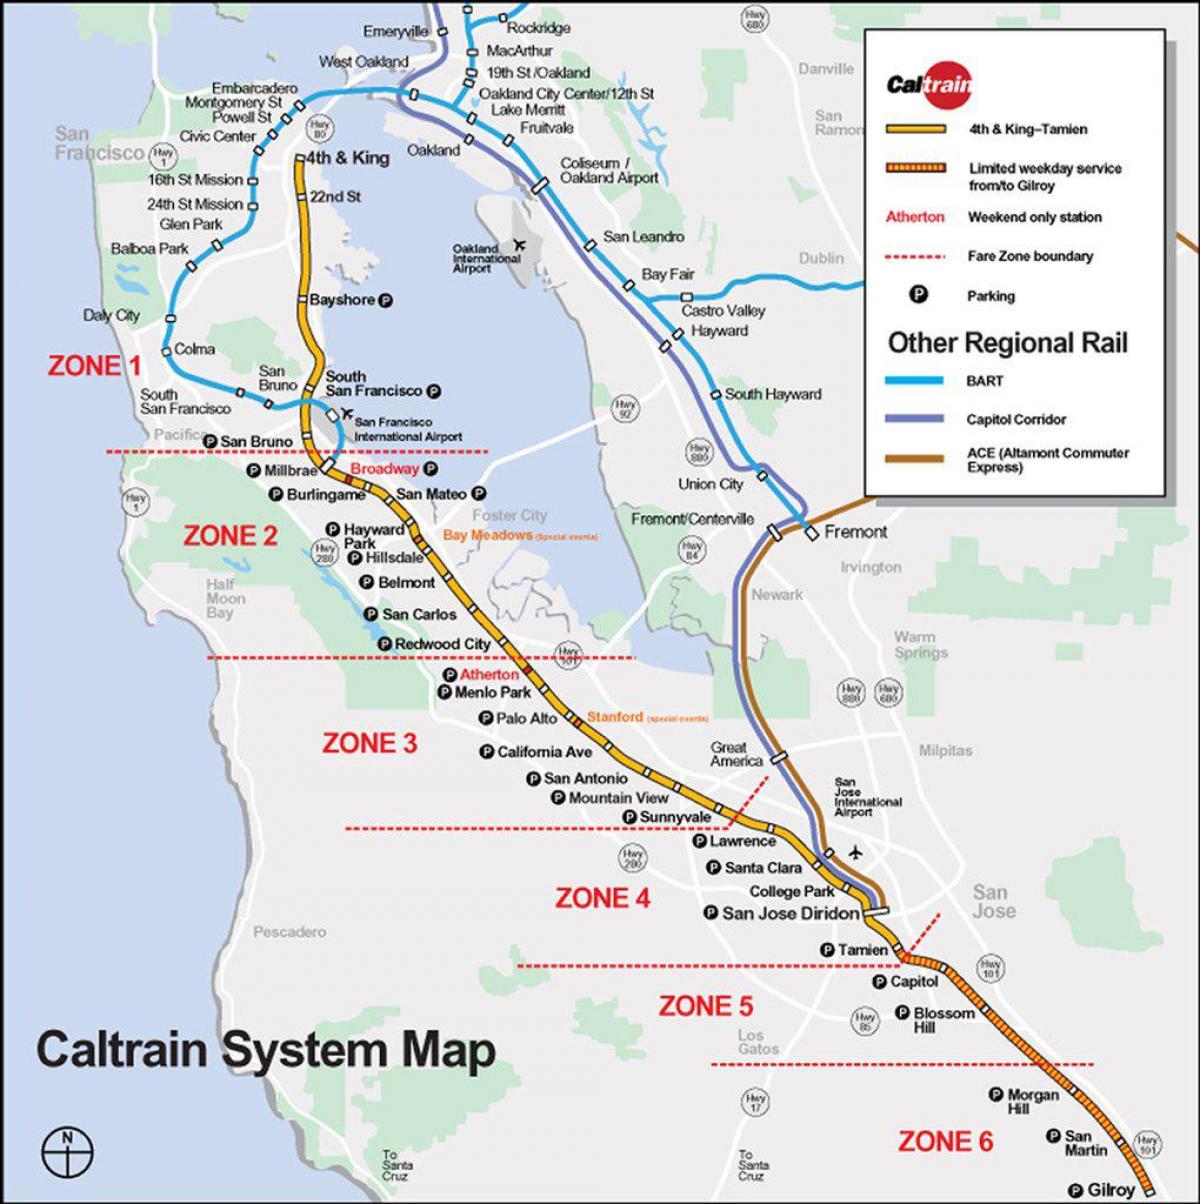 caltrain маршрутата на мапата